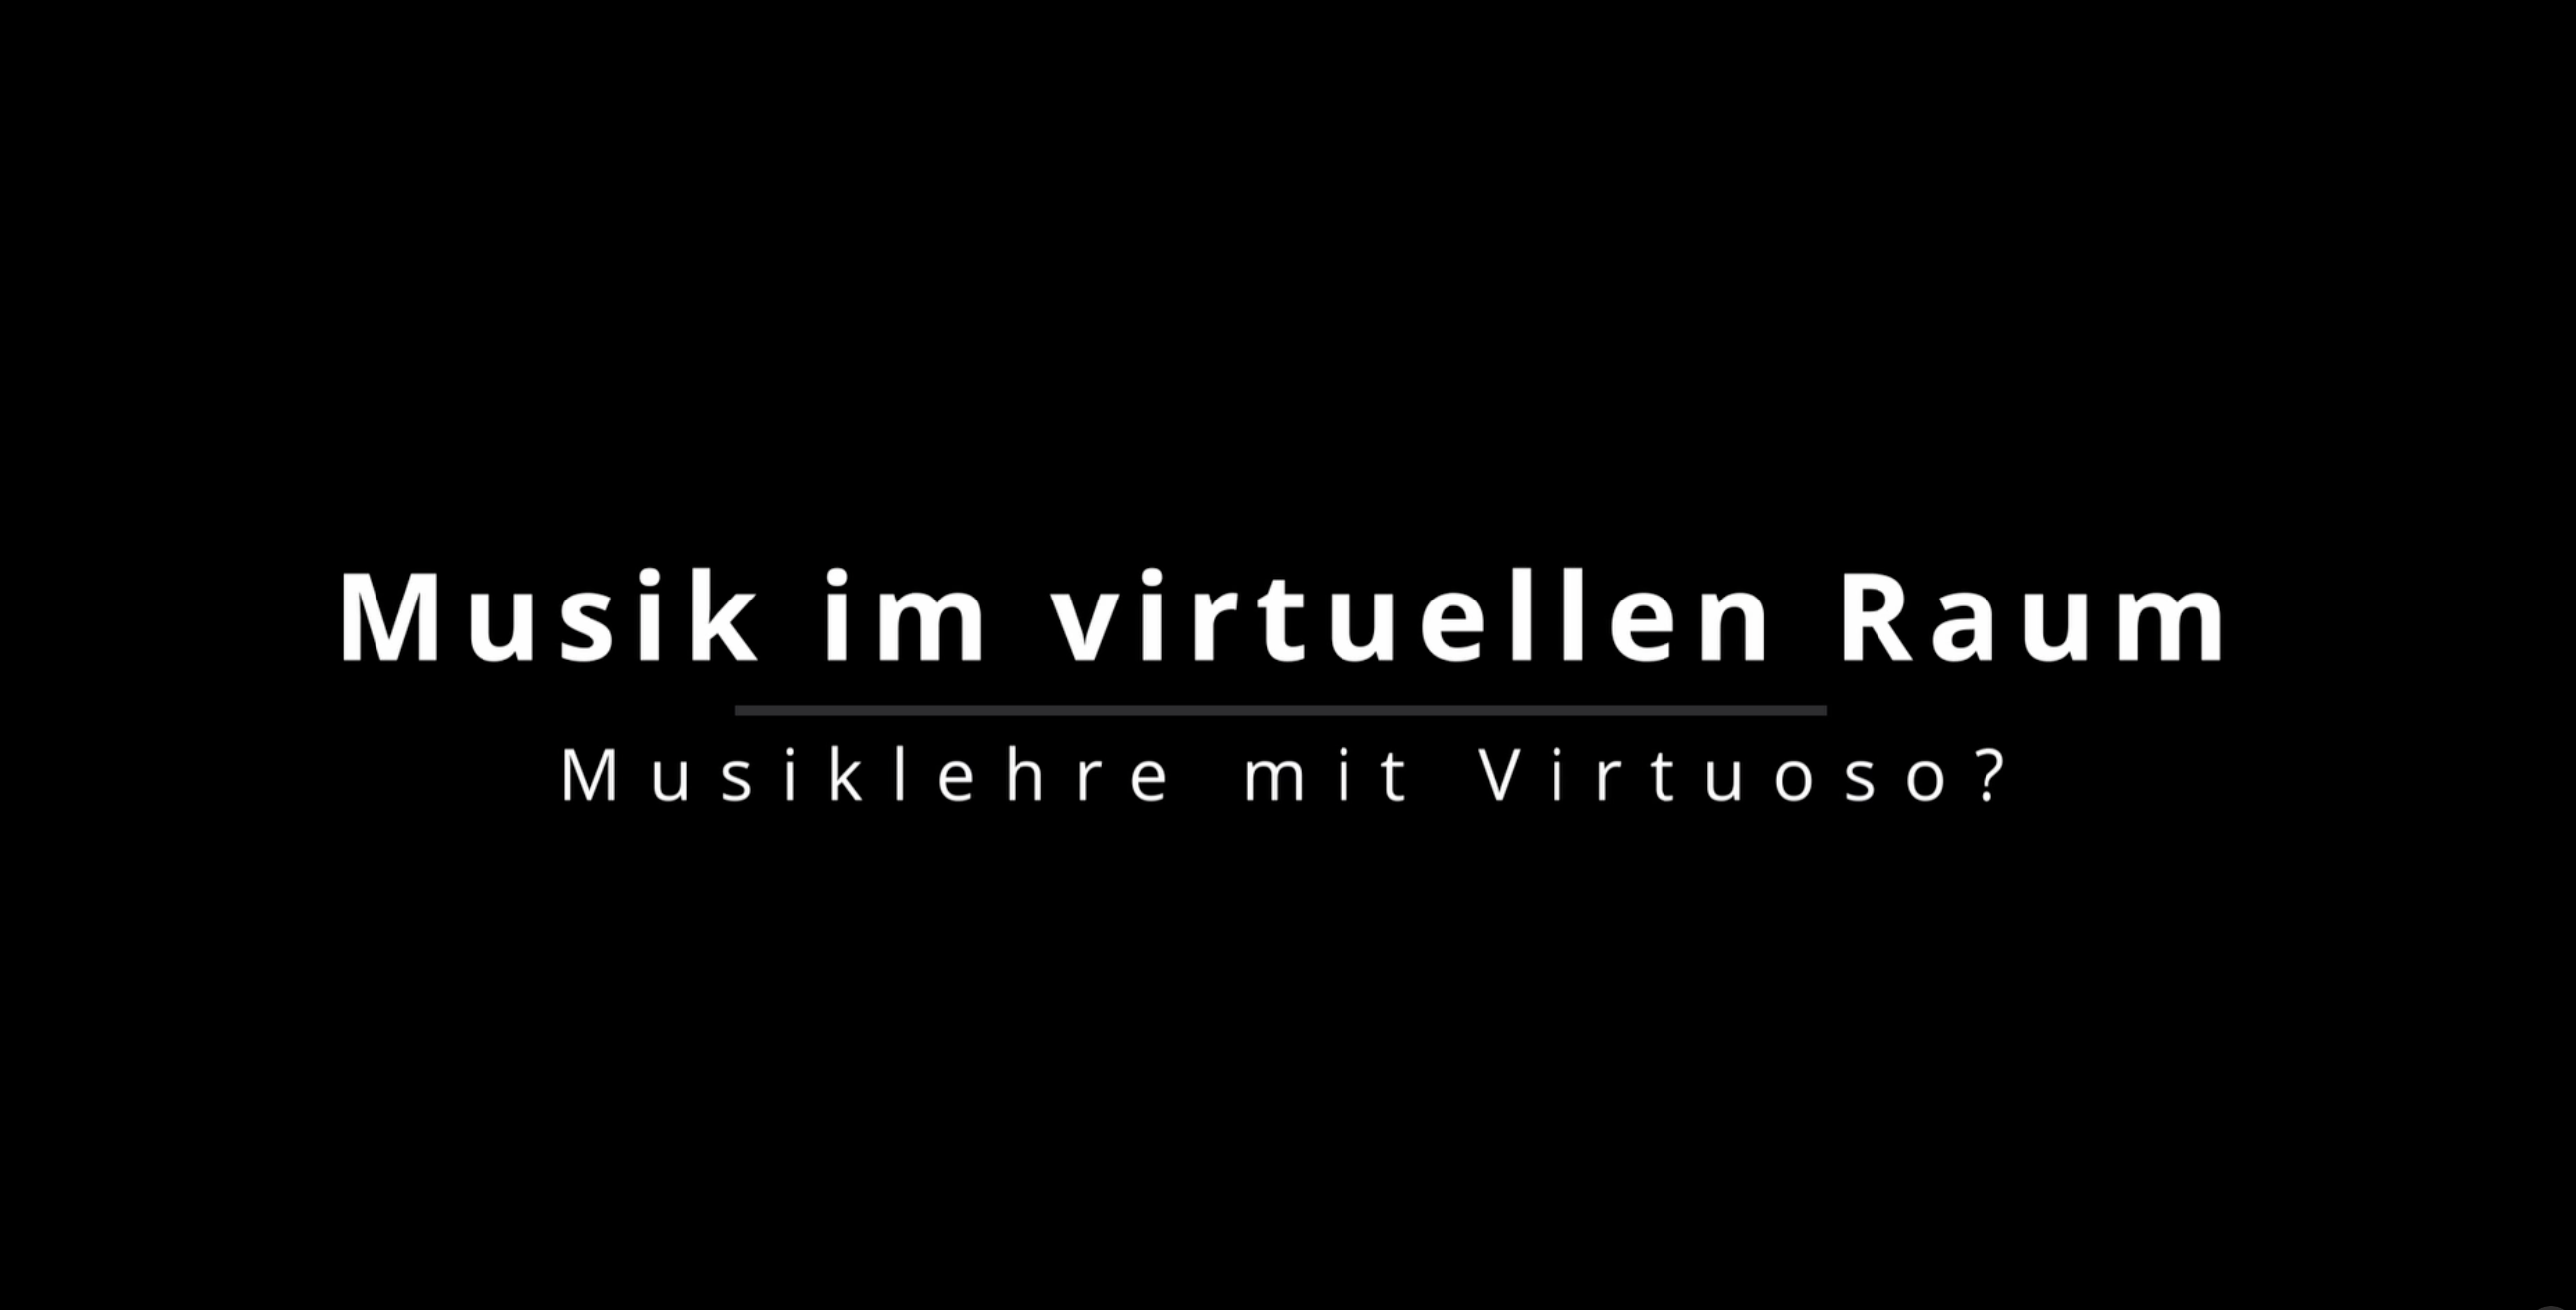 Introbild aus dem dargestellten Video - weiße Schrift auf schwarzem Hintergrund: Musik im virtuellen Raum - Musiklehre mit Virtuoso?